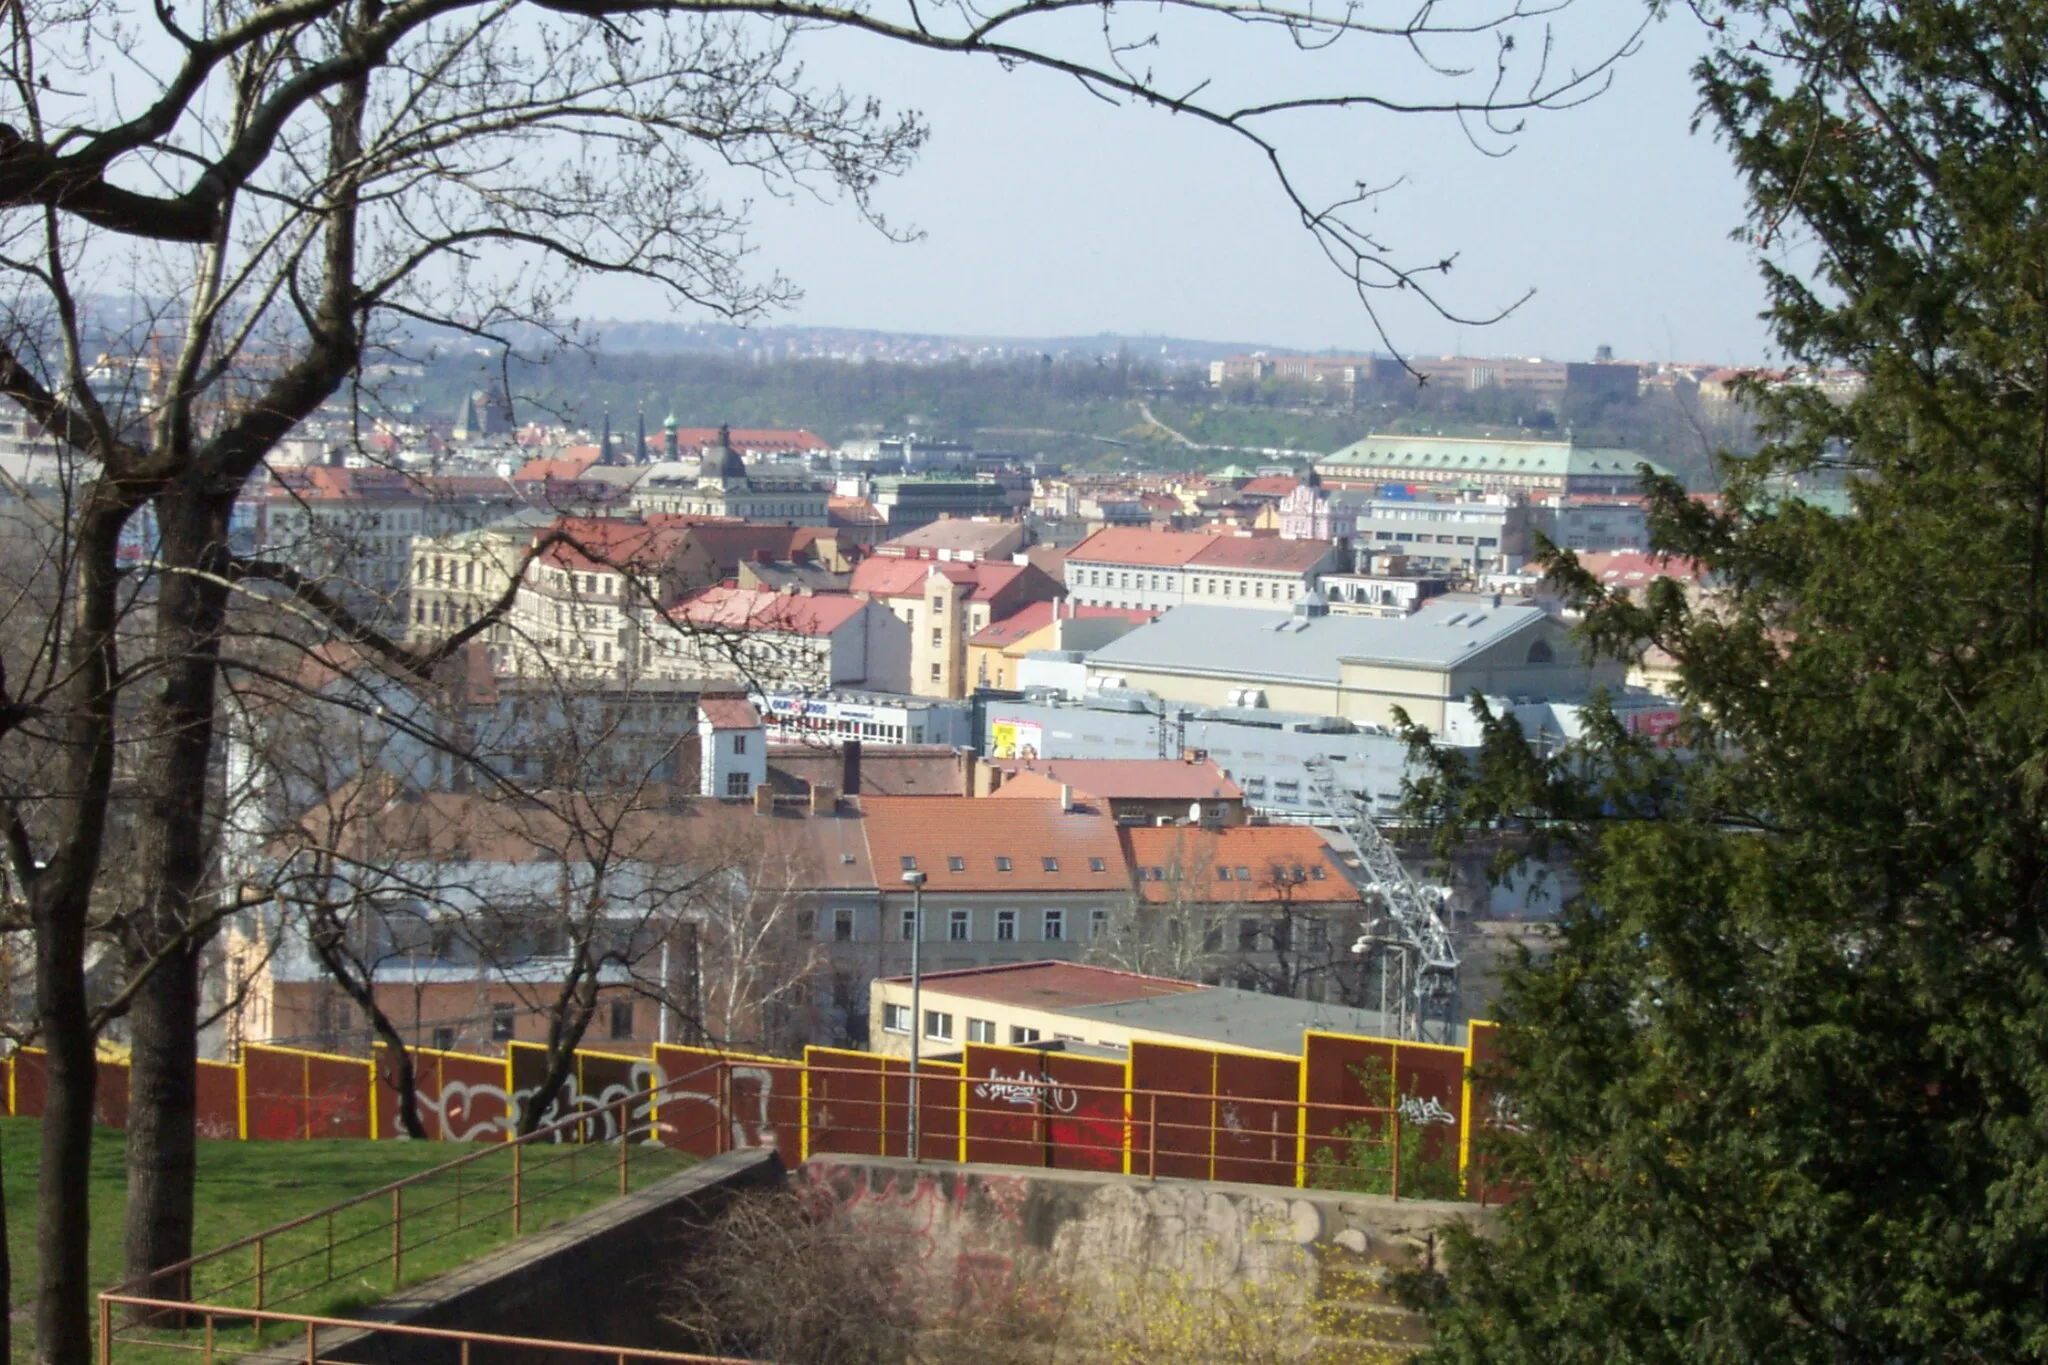 Obrázek Praha